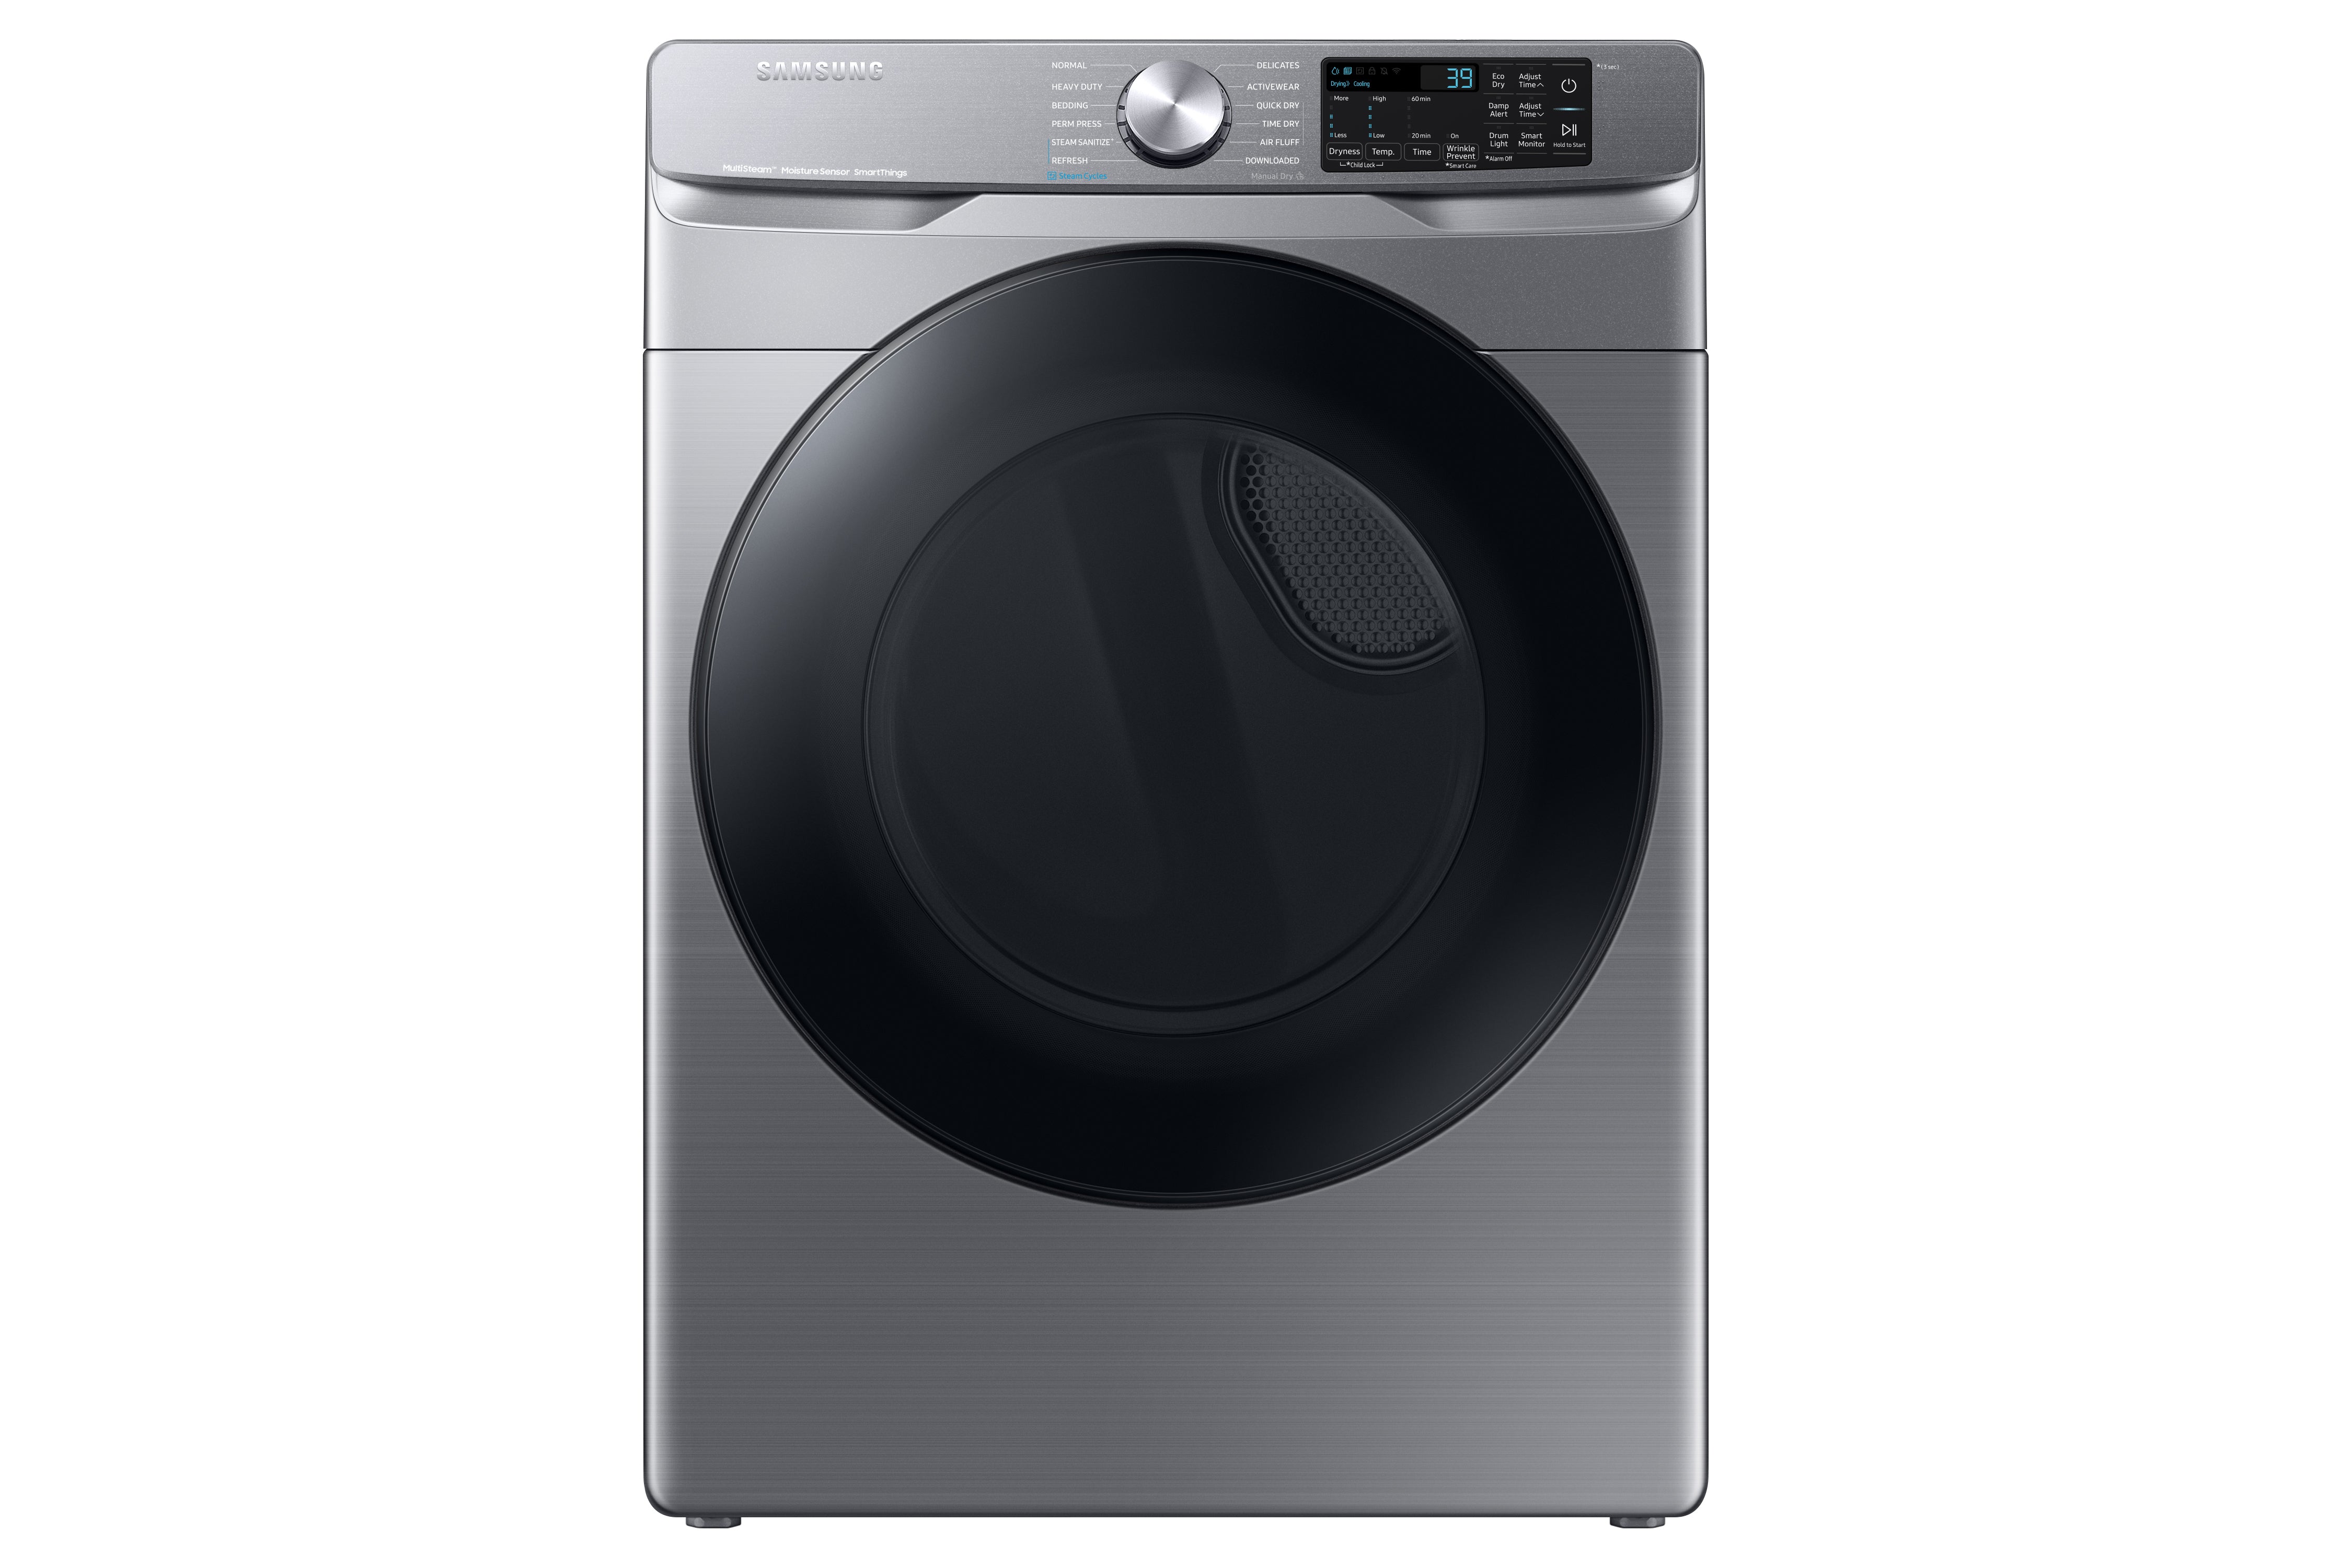 Samsung - 7.5 cu. Ft  Gas Dryer in Platinum - DVG45B6305P